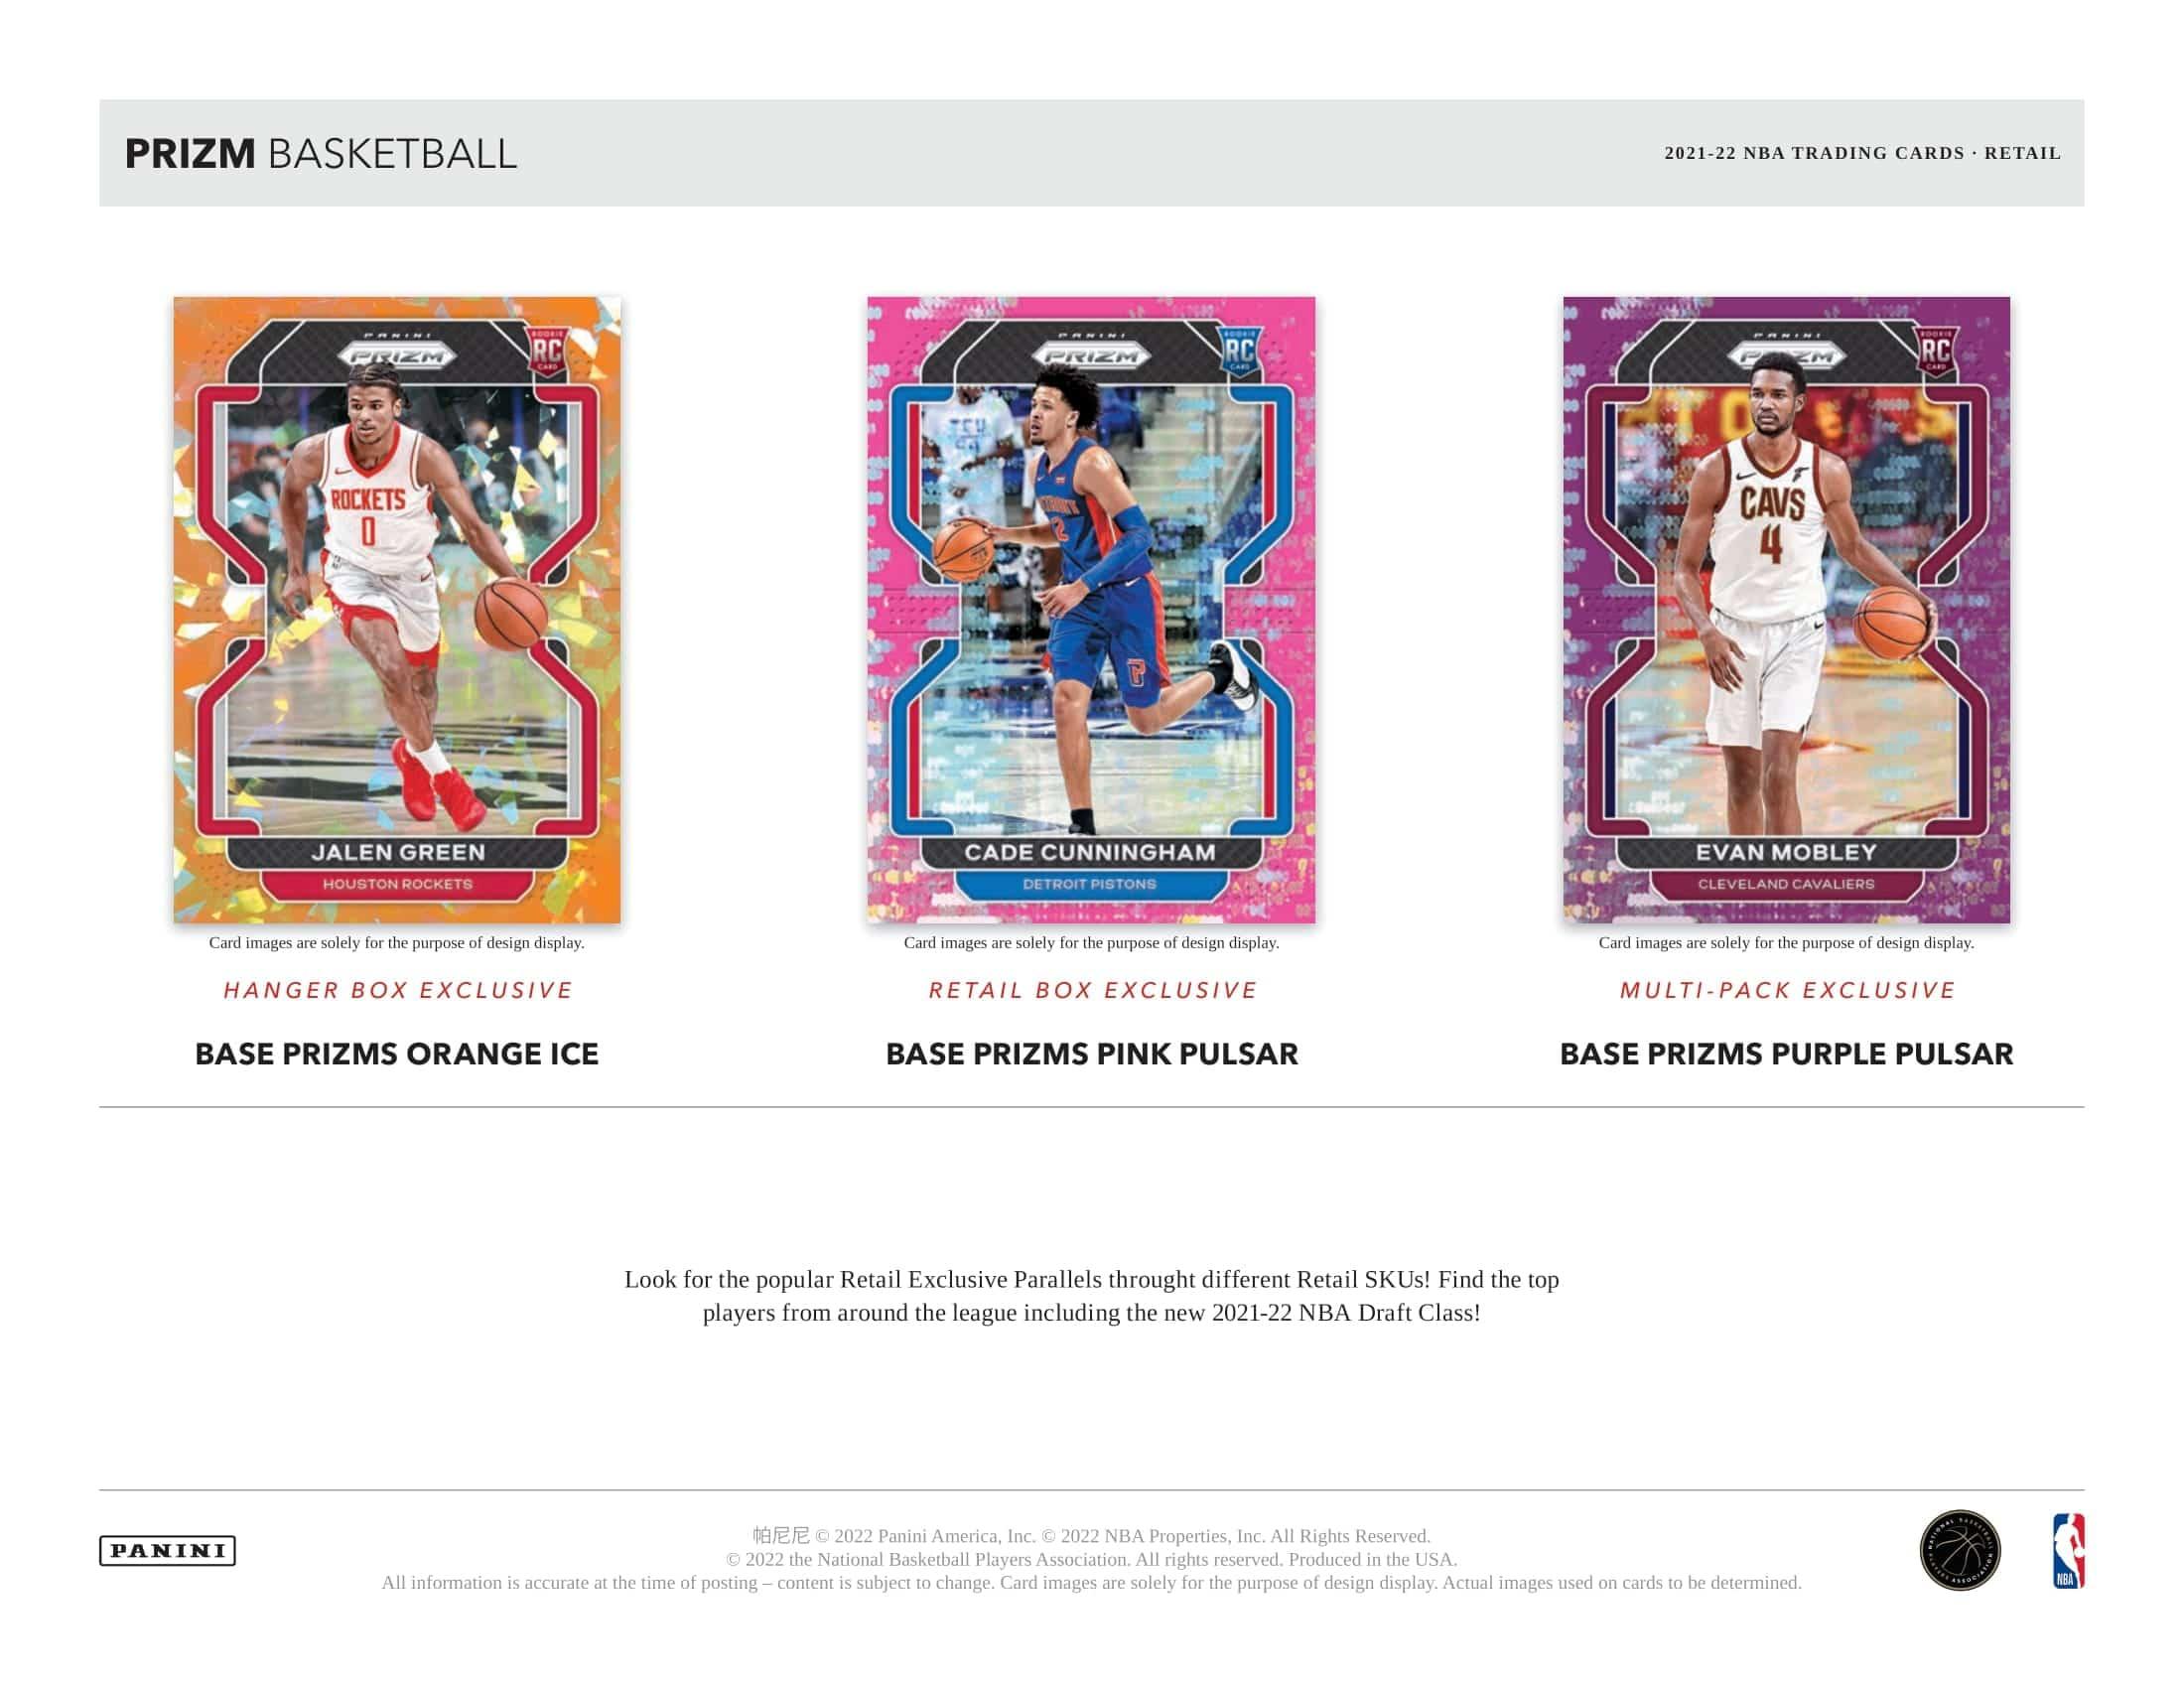 Panini - 2021/22 Prizm Basketball (NBA) - Retail Box - The Card Vault